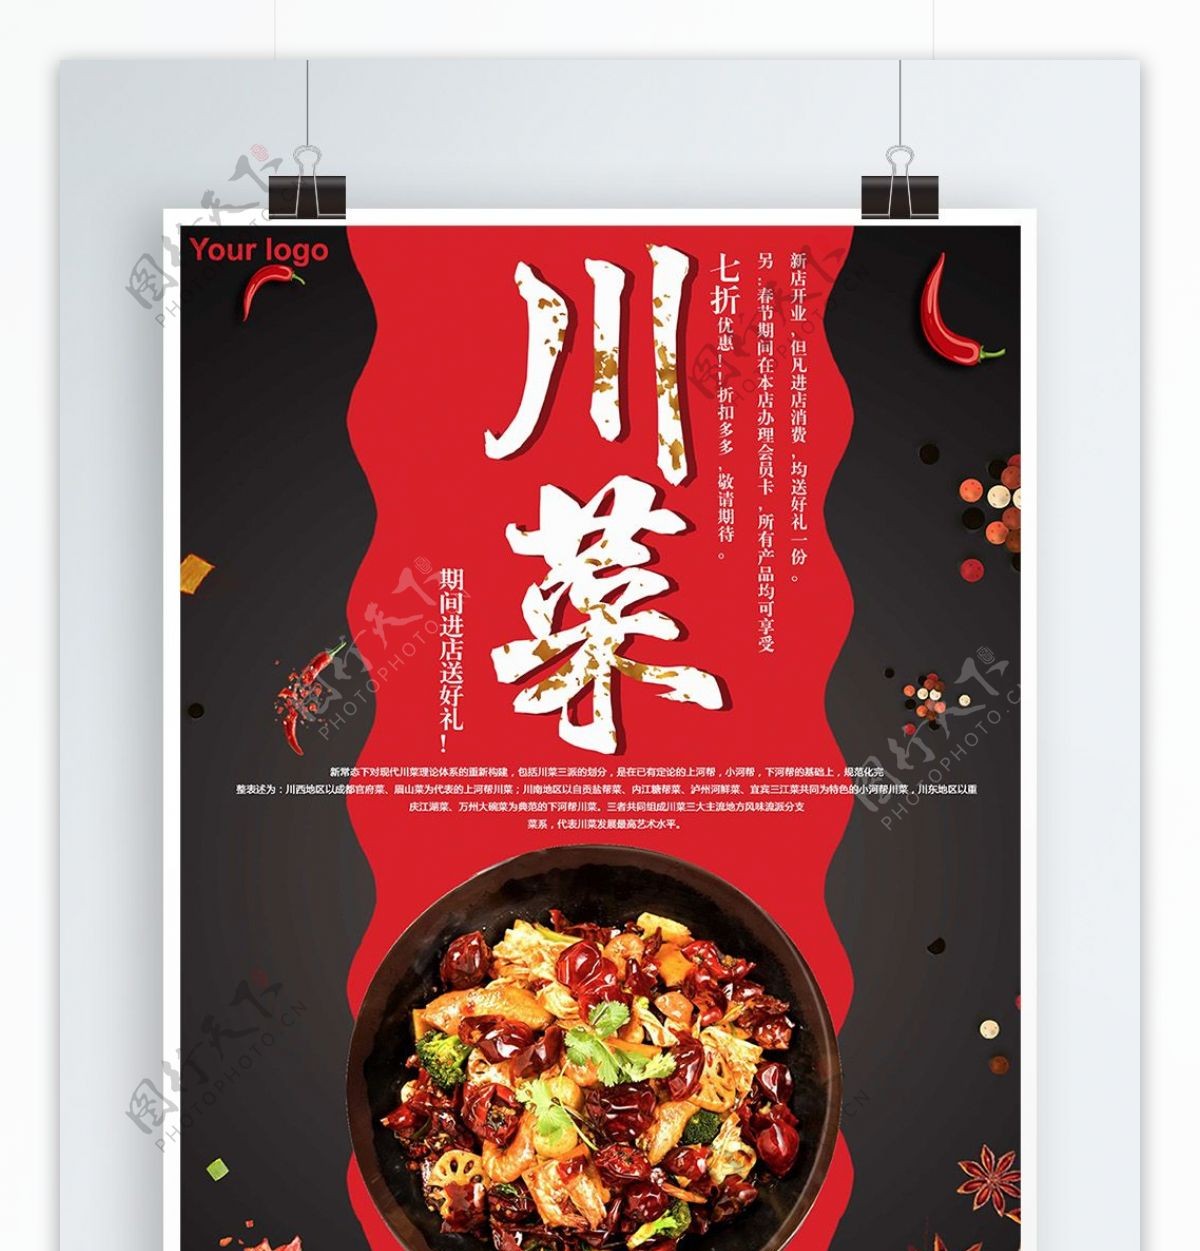 黑色背景简约大气美味川菜宣传海报